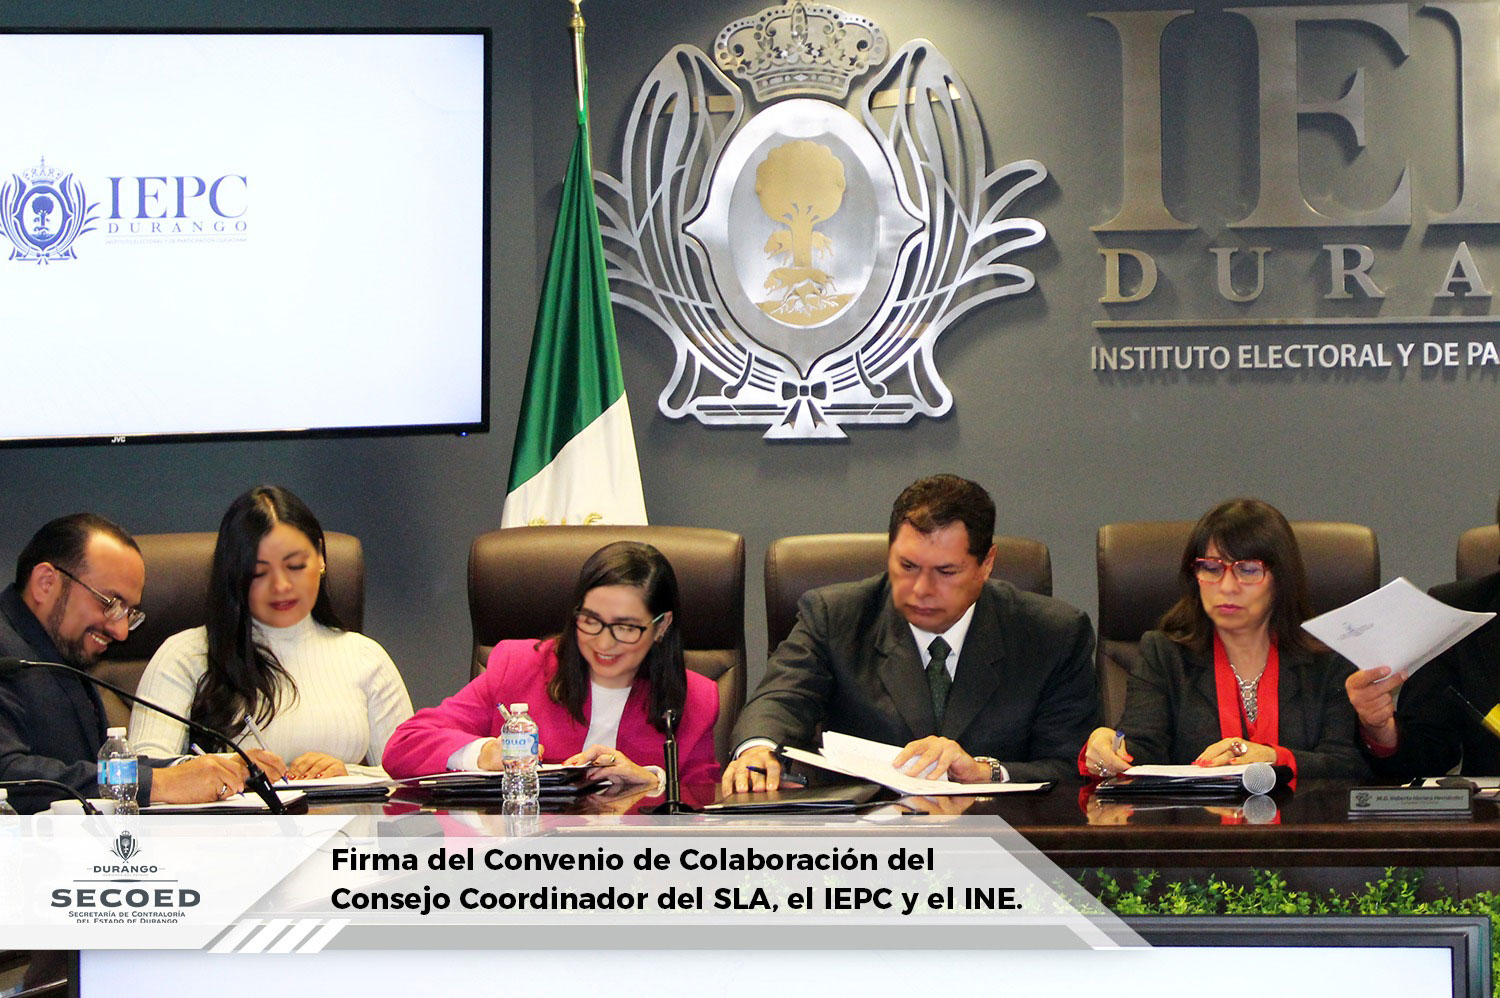 Firma del convenio de colaboración del Consejo Coordinador del SLA, el IEPC y el INE